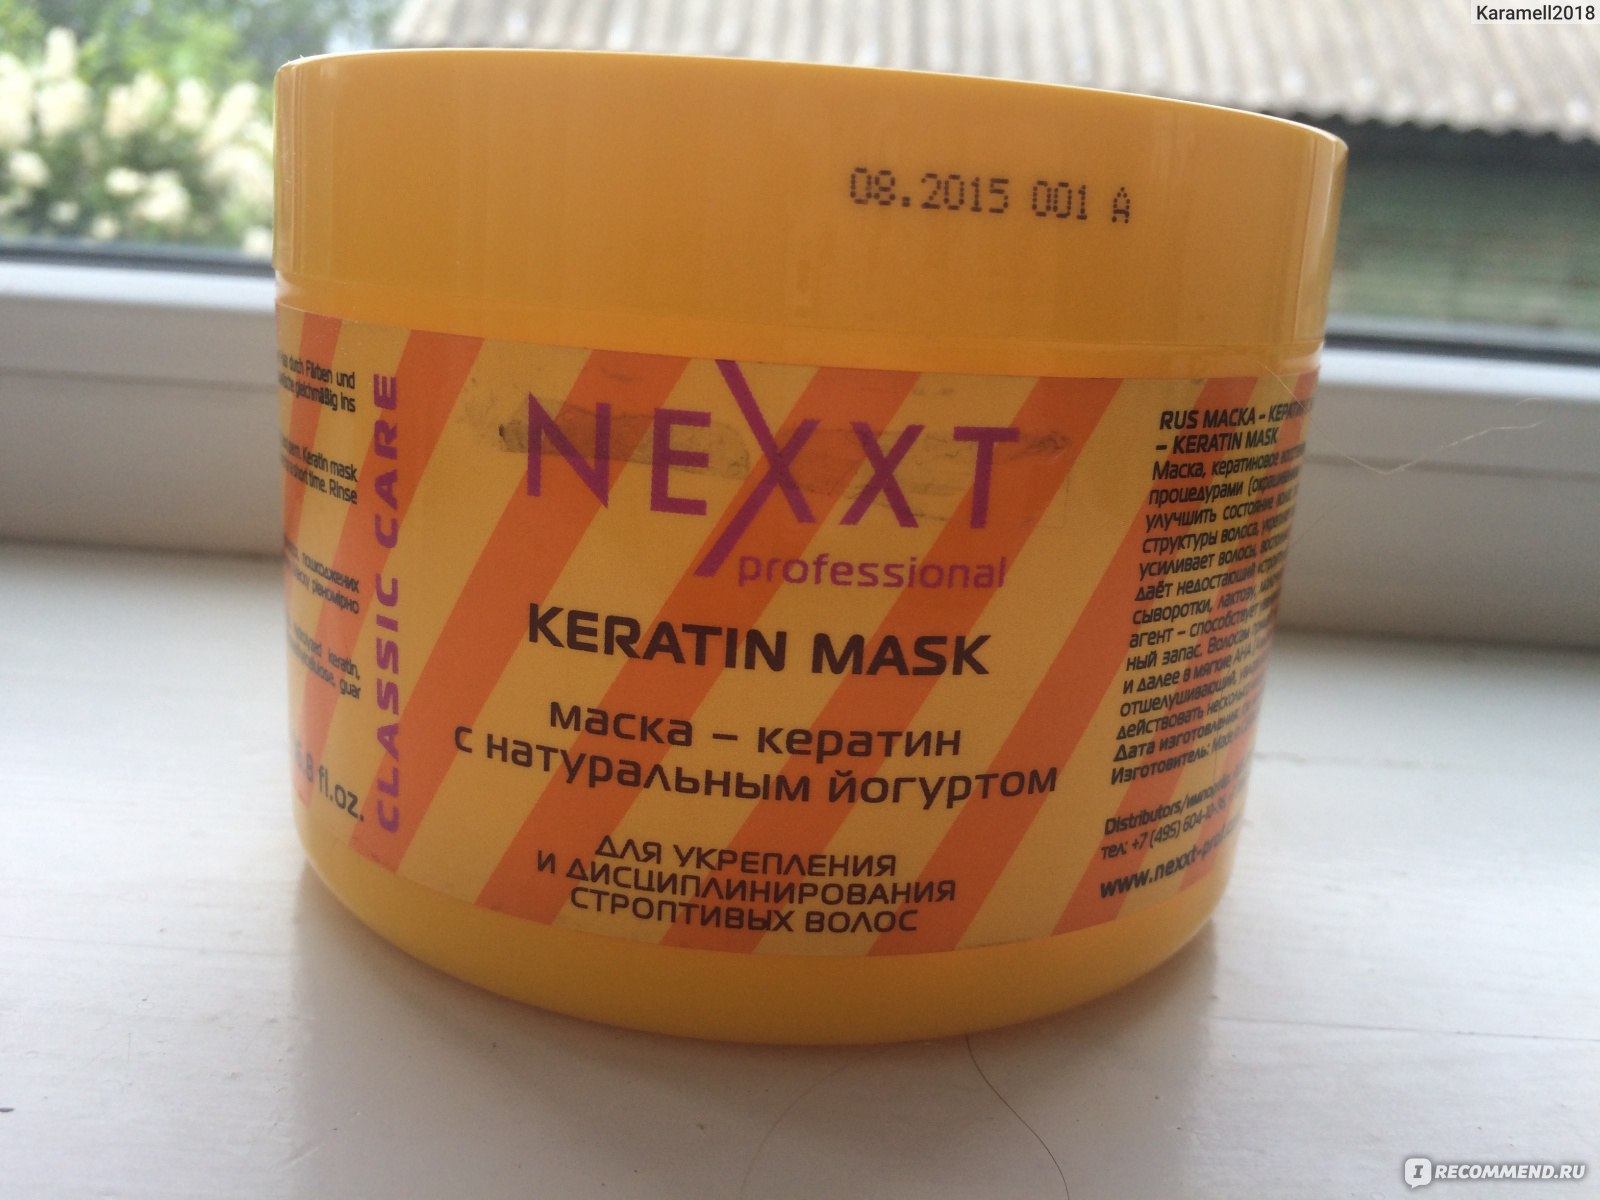 Nexxt маска антистресс против старения волос